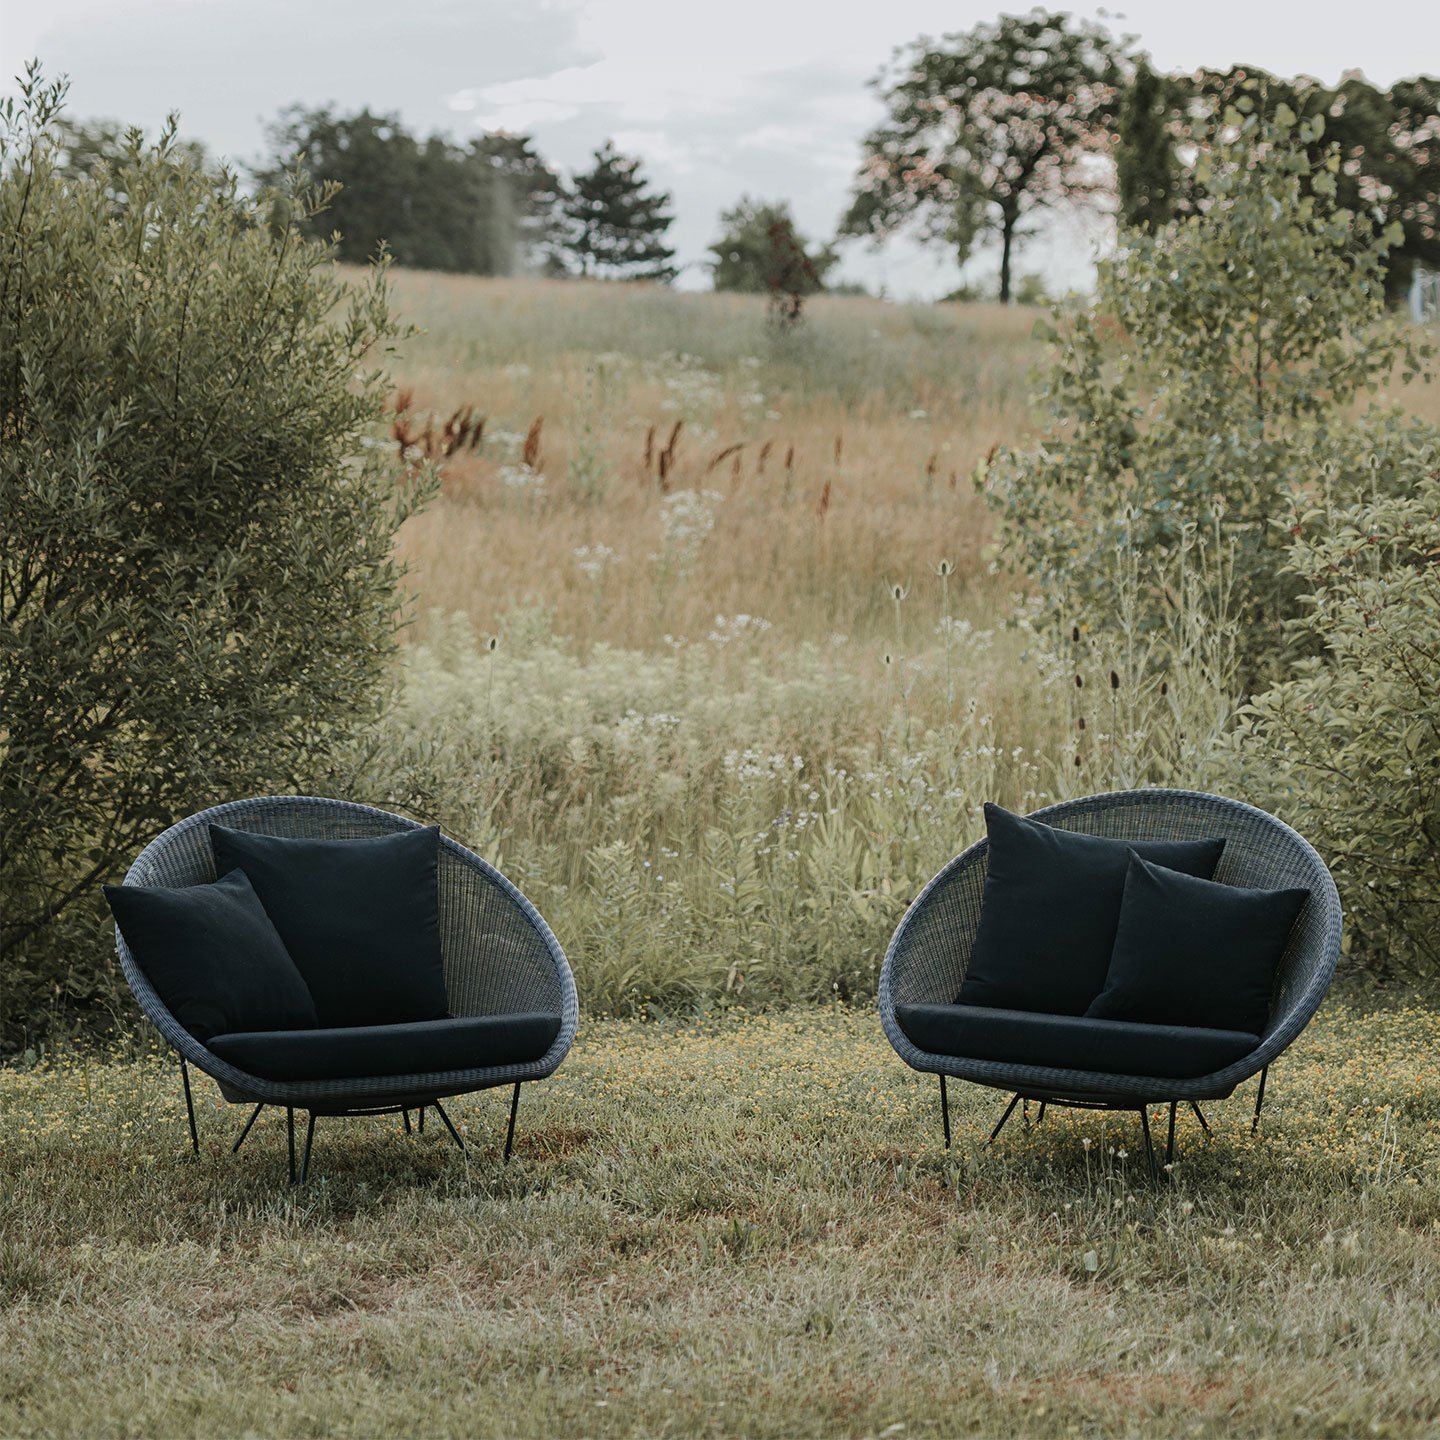 Haworth Gigi II lounge chairs in a field amidst nature